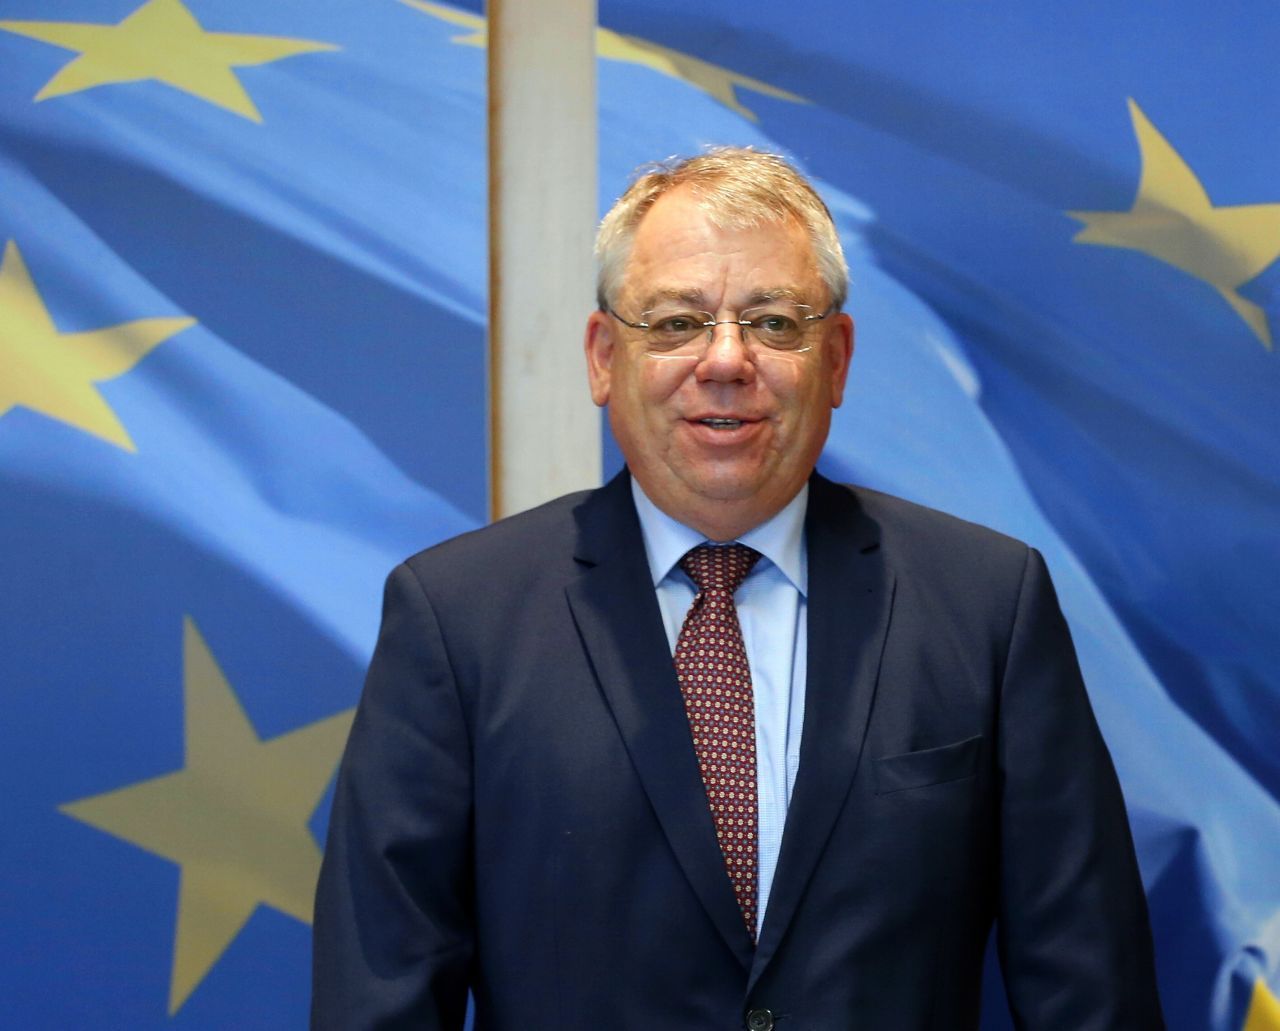 Klaus-Heiner Lehne, ein deutscher CDU-Politiker, steht dem Rechnungshof seit 2016 als Präsident vor. Er leitet die 27 EuRH-Mitglieder, jeweils eines pro EU-Staat.